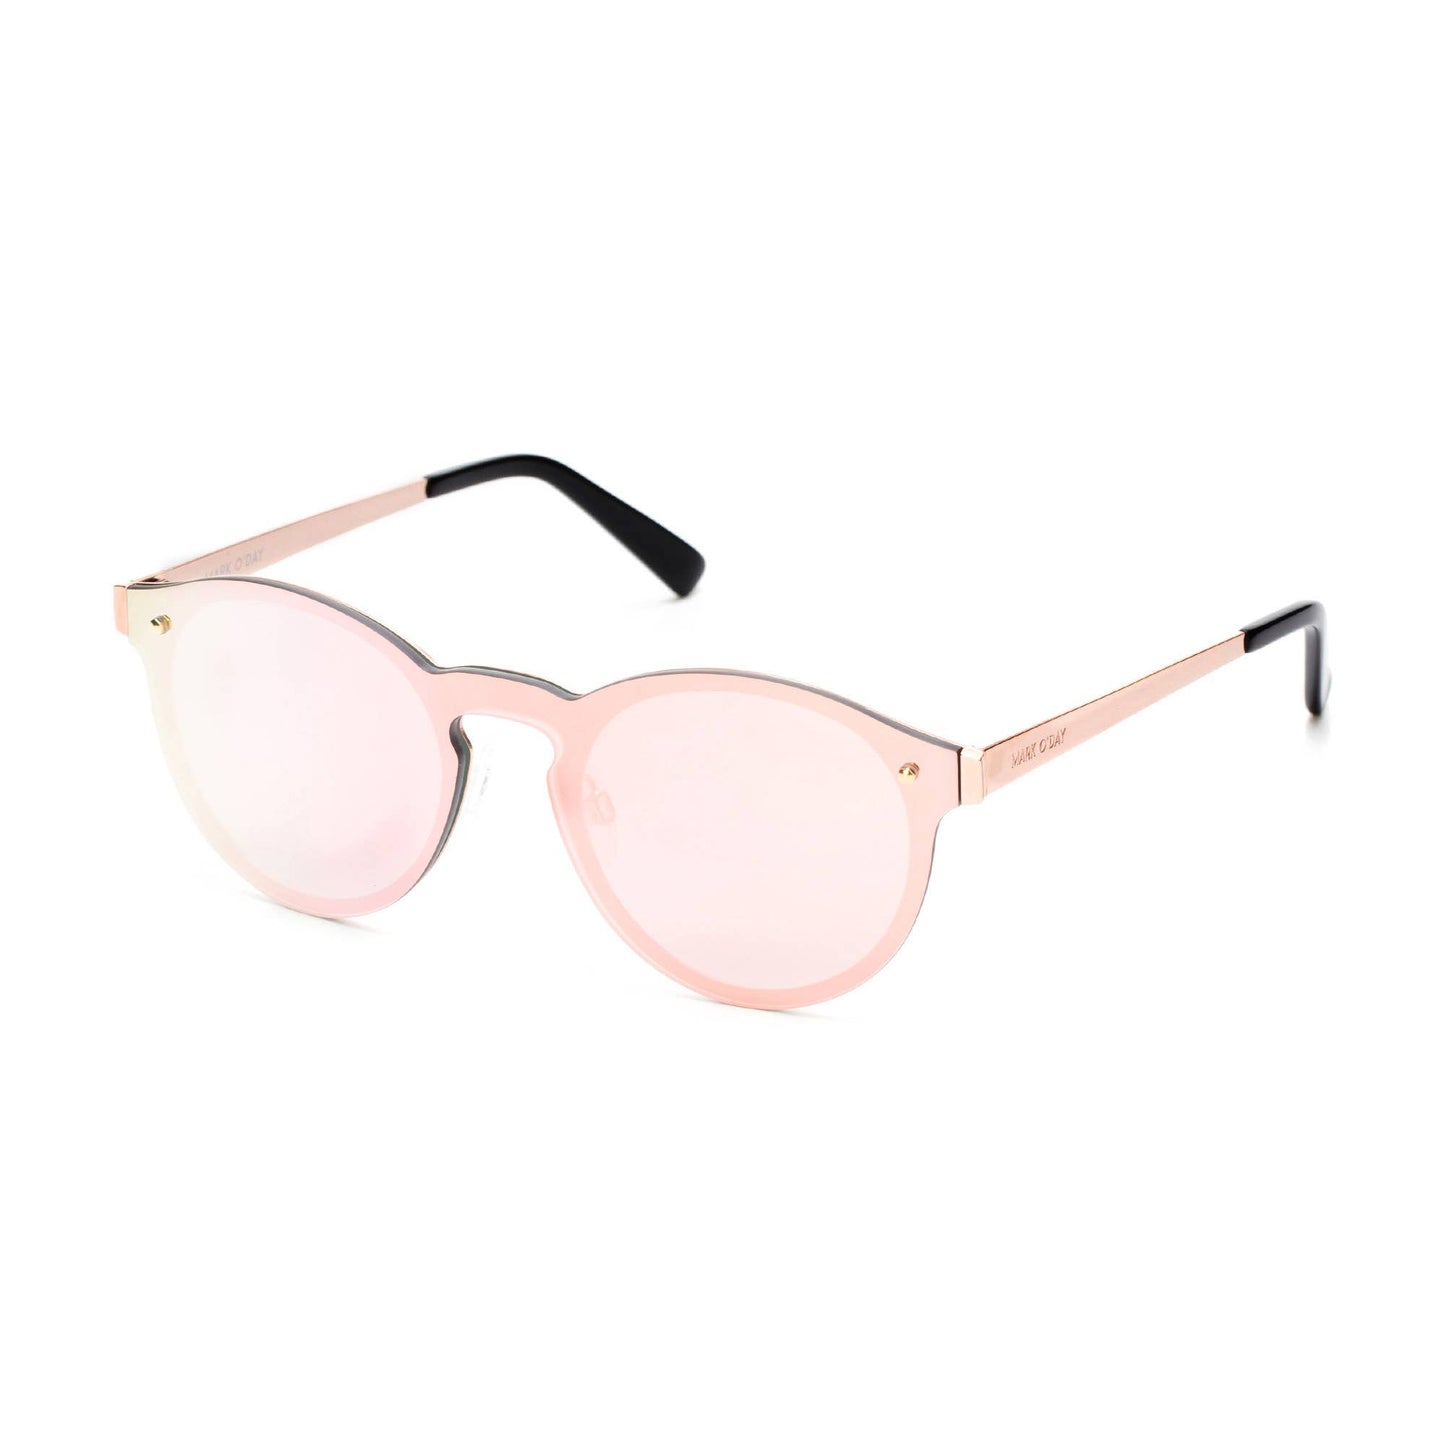 B003 - VULCANO Sunglasses: PINK REVO / REGULAR / WOMEN